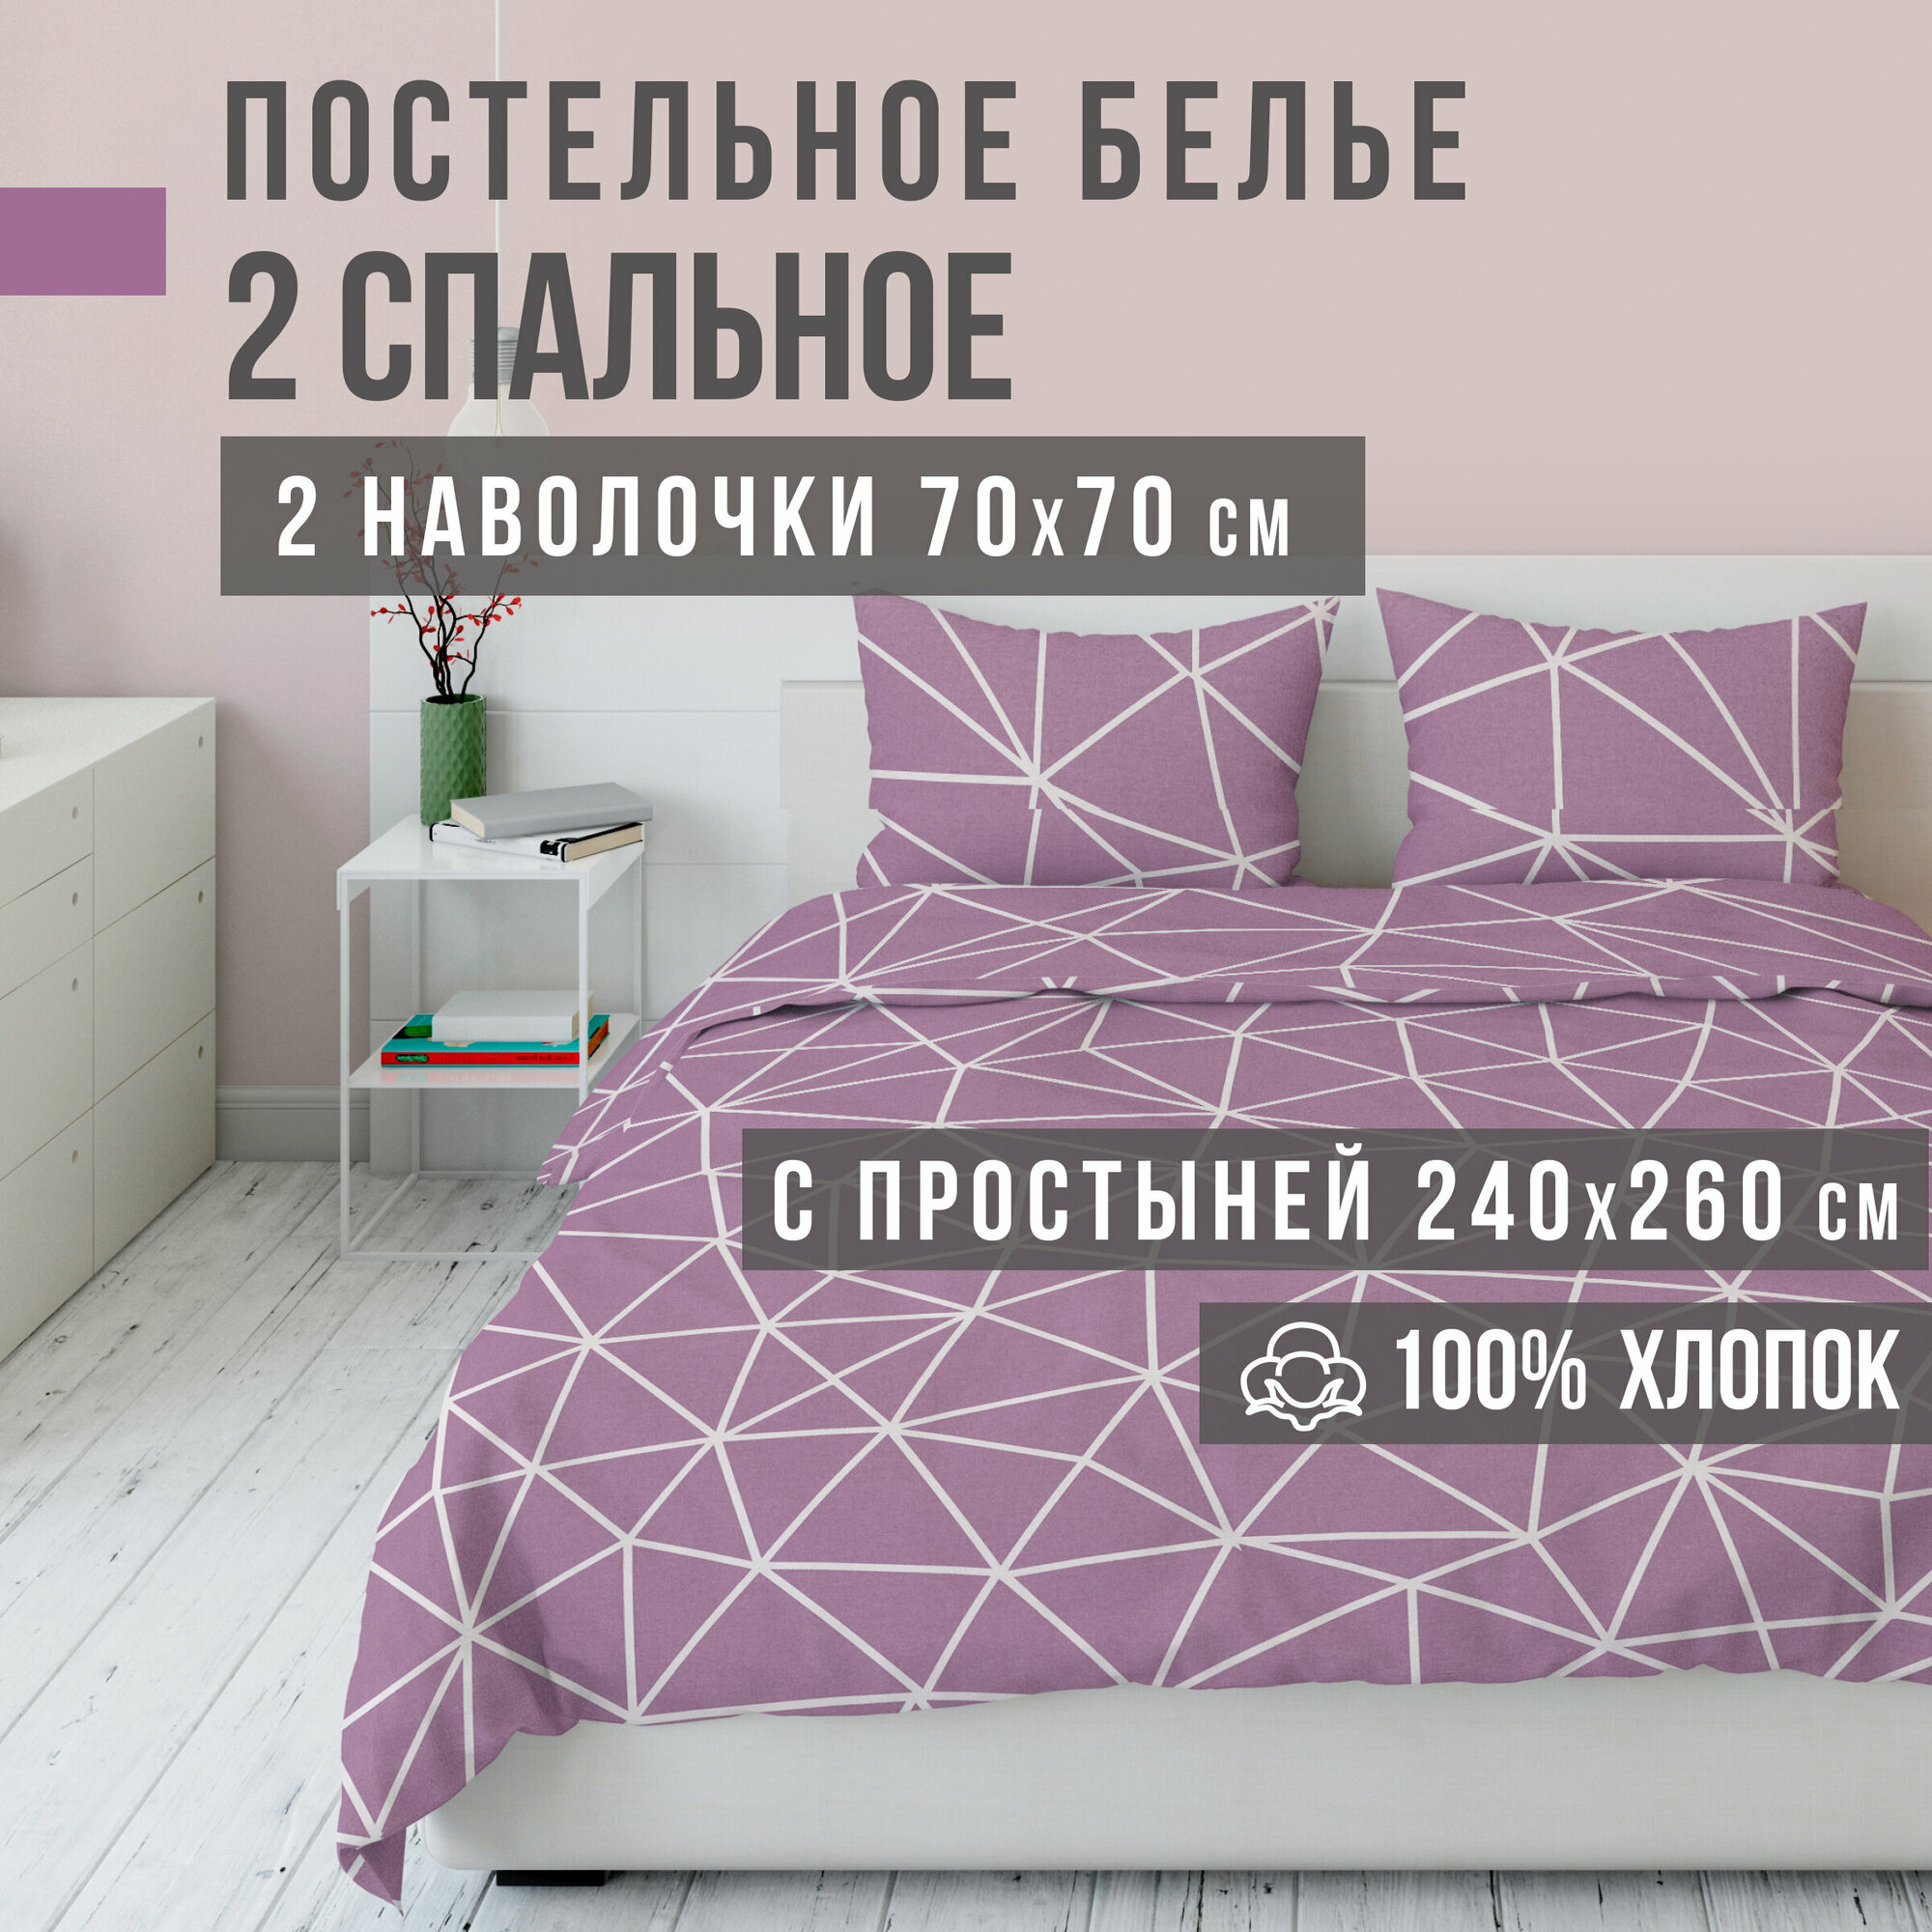 Комплект постельного белья VENTURA LIFE Ранфорс LUXE 2 спальный, евро простыня (70х70), Розовые грани